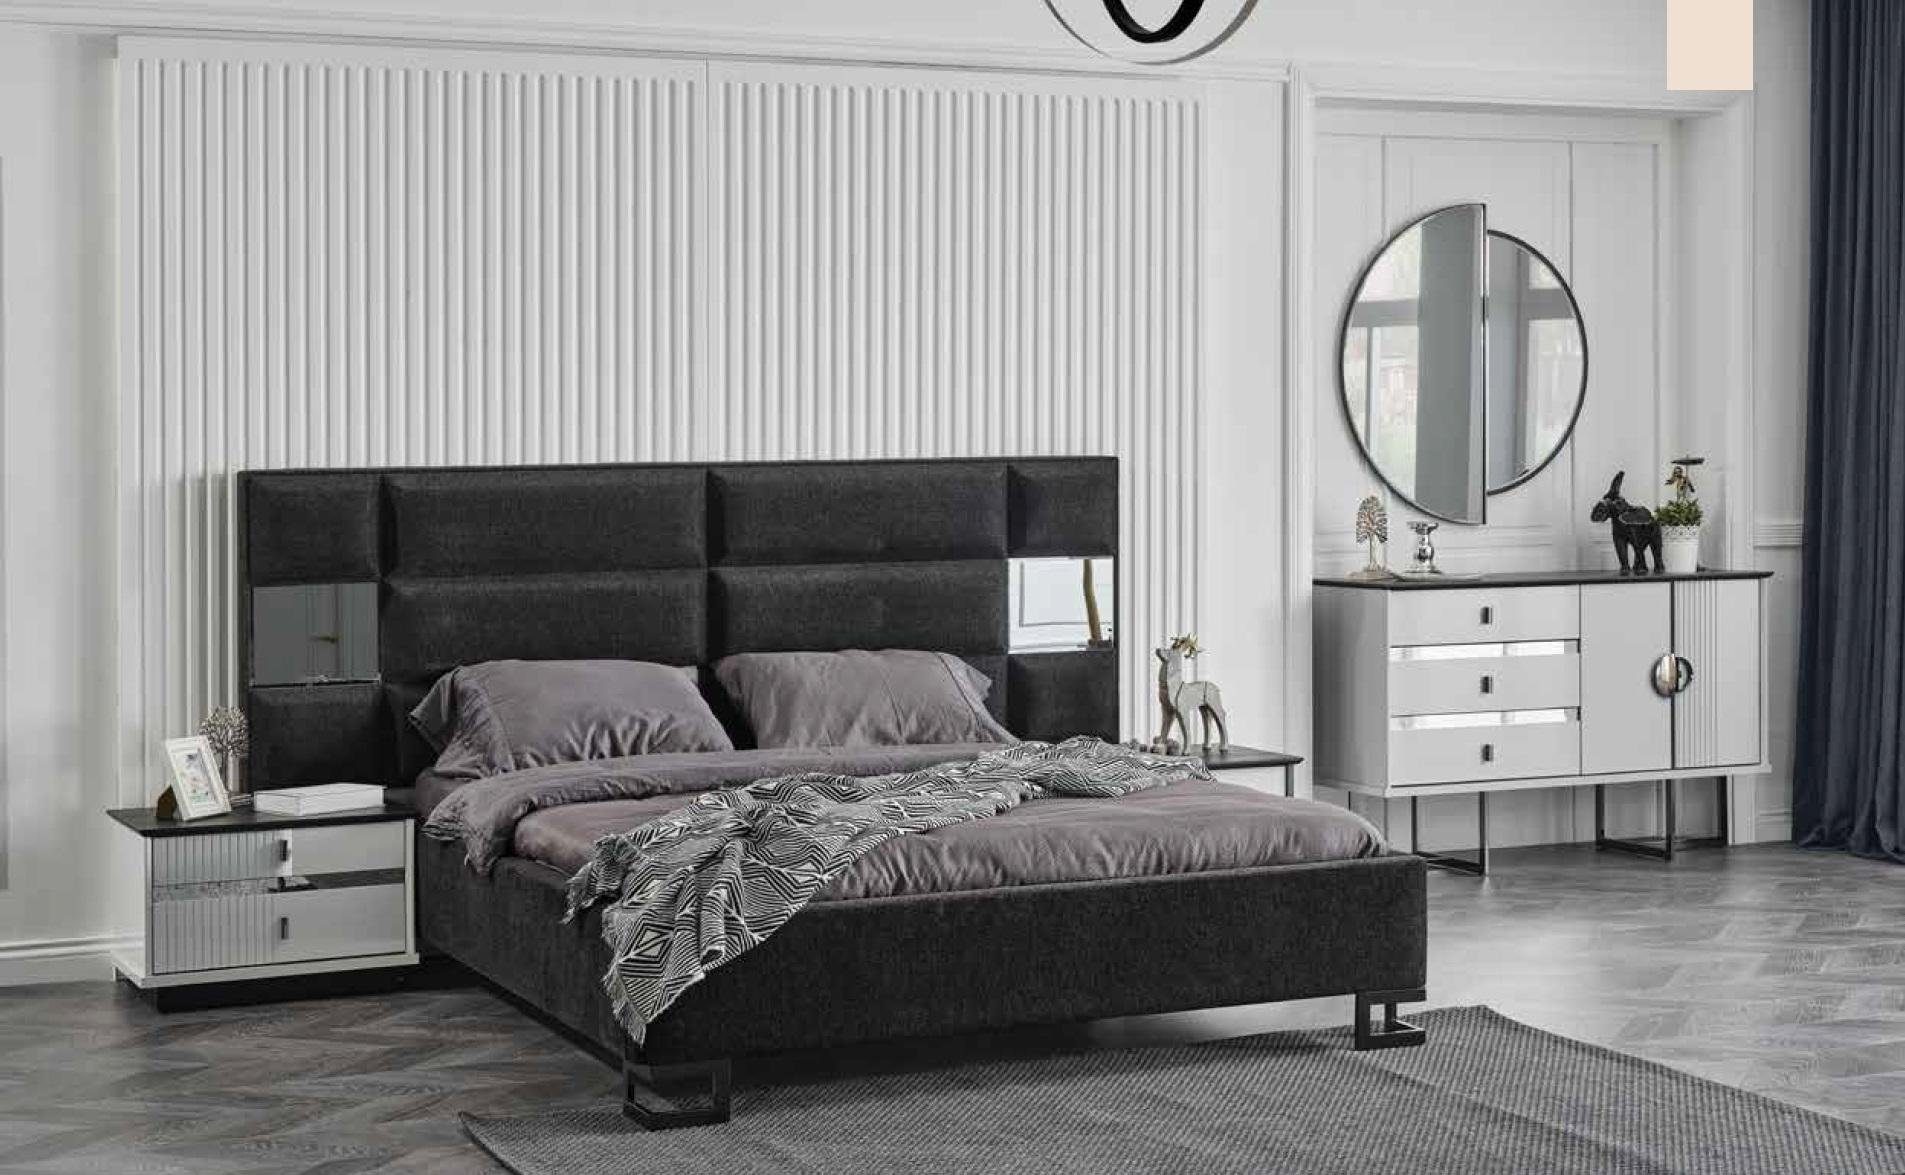 JVmoebel Bett Bett Luxus Möbel Betten Schlafzimmer 180x200cm Holz Bett (Bett)